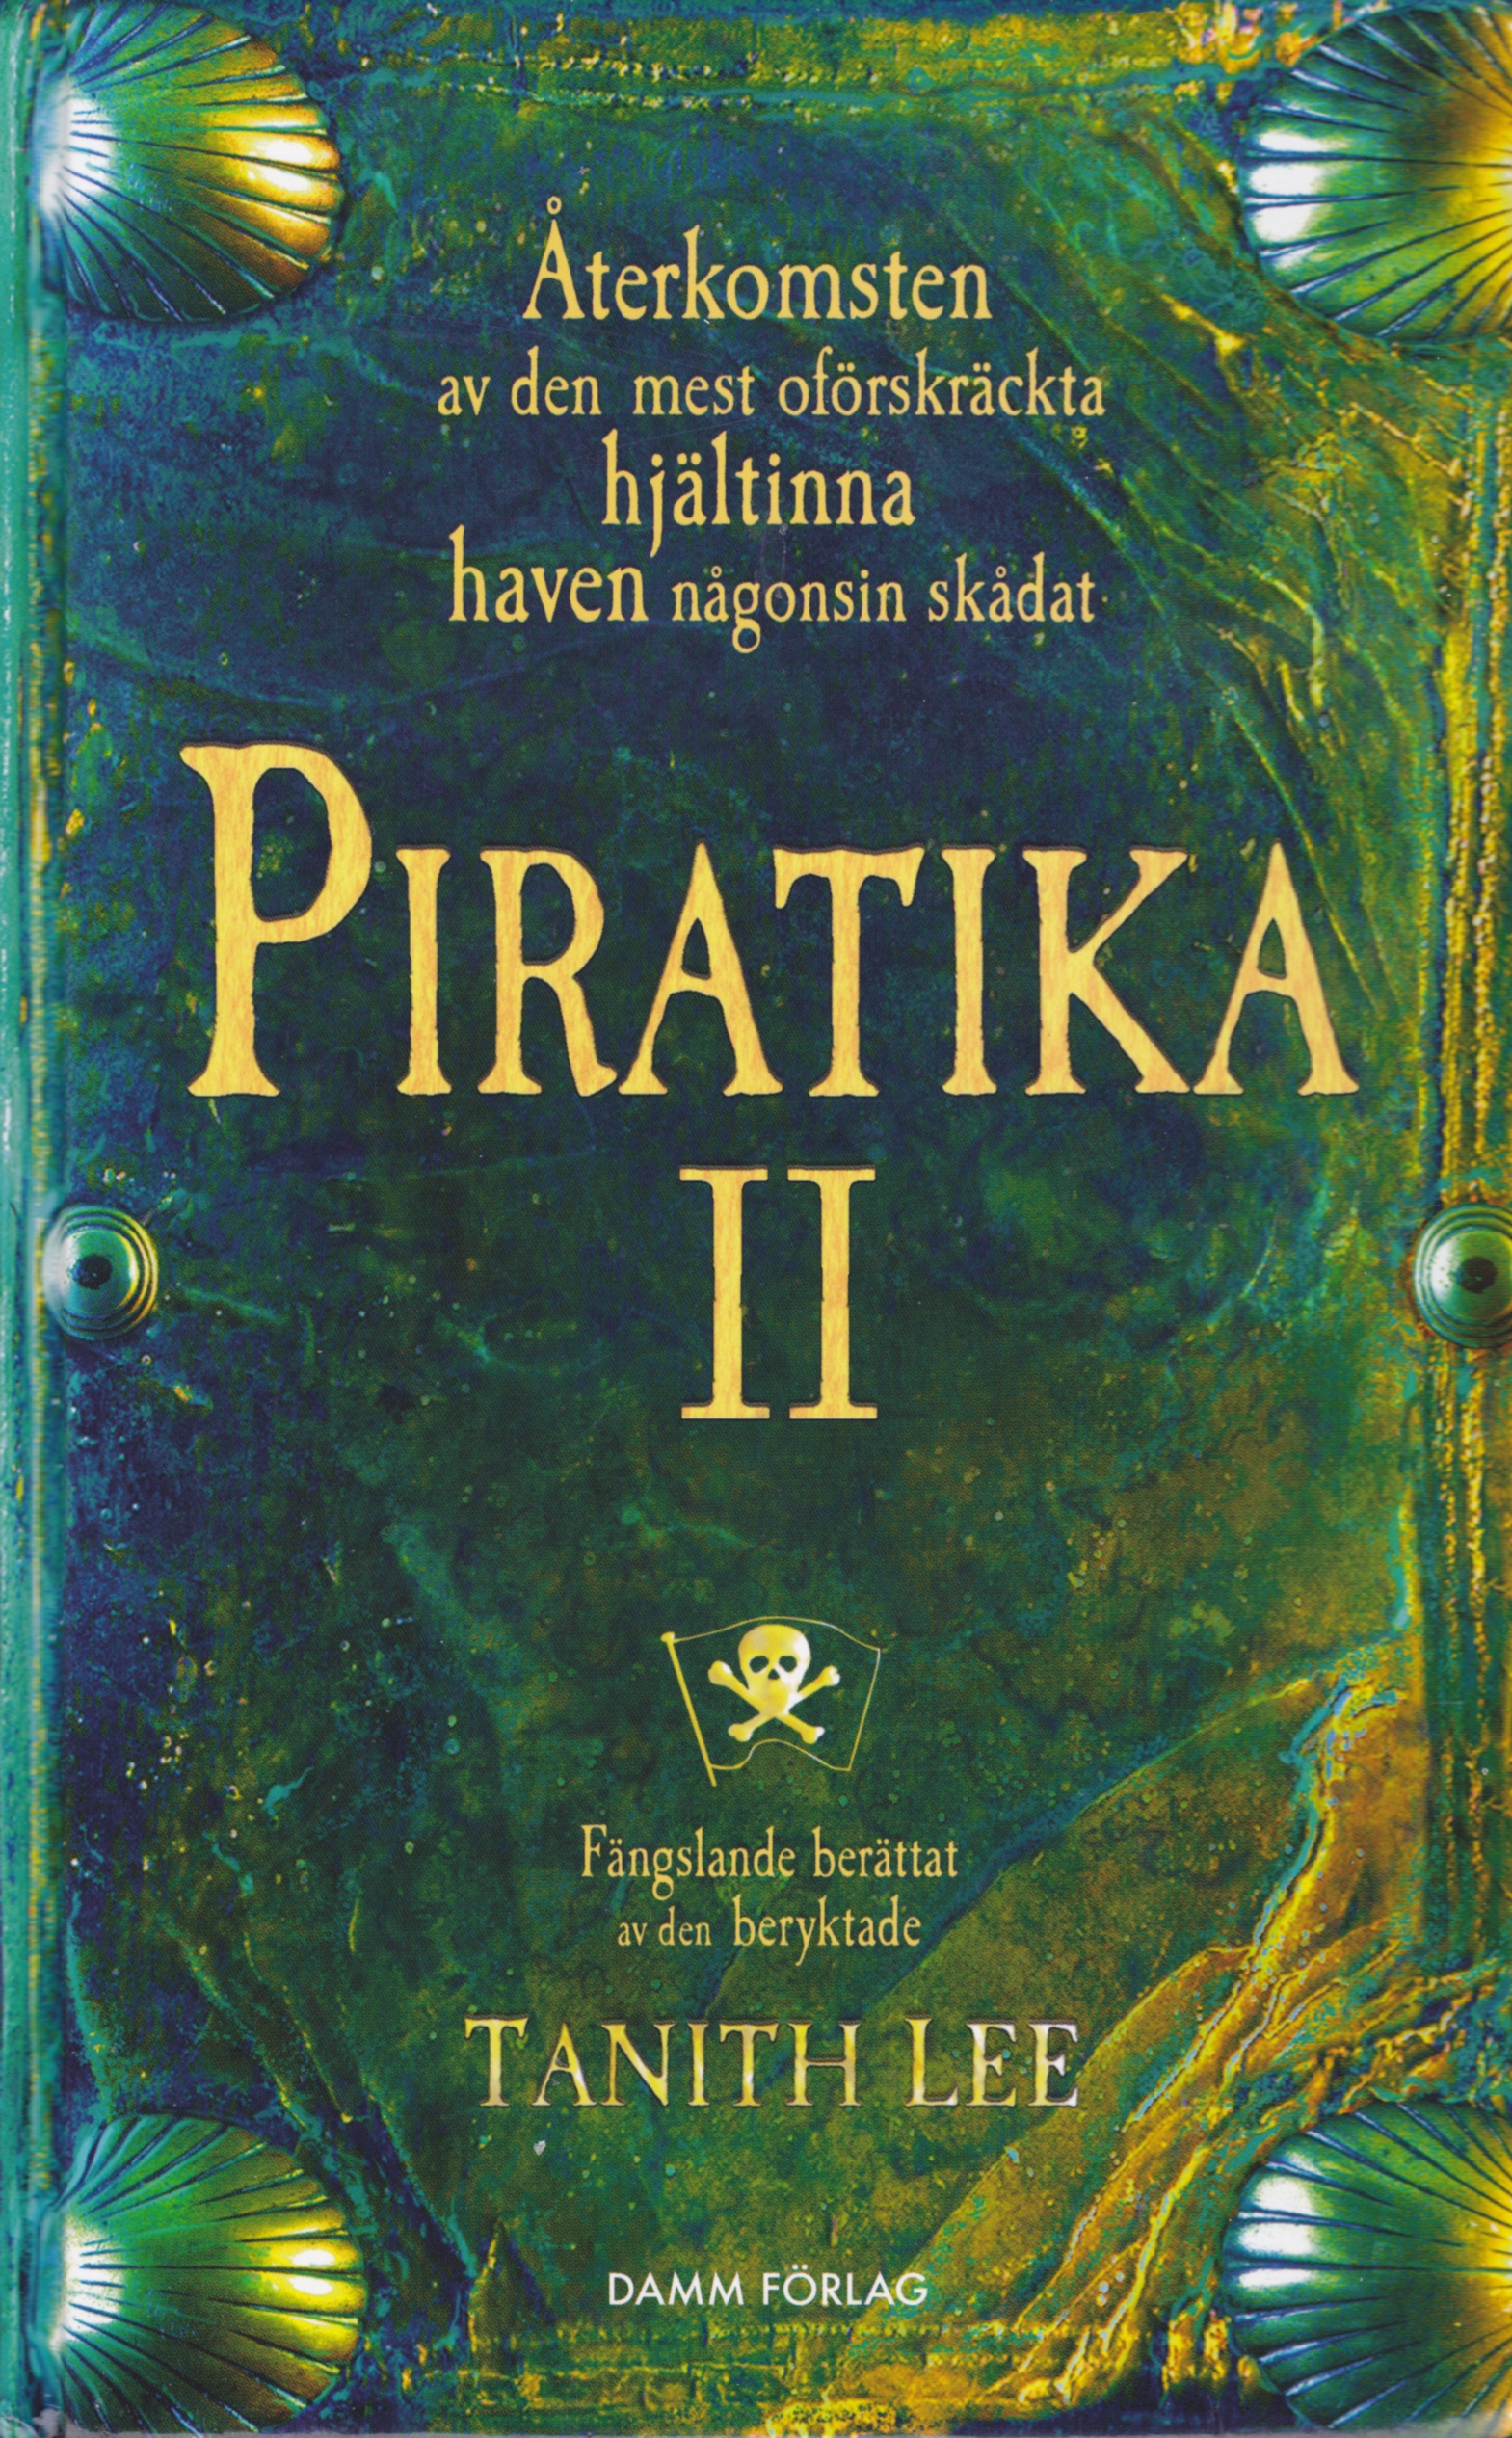 Piratika II<br>(Piratica II)